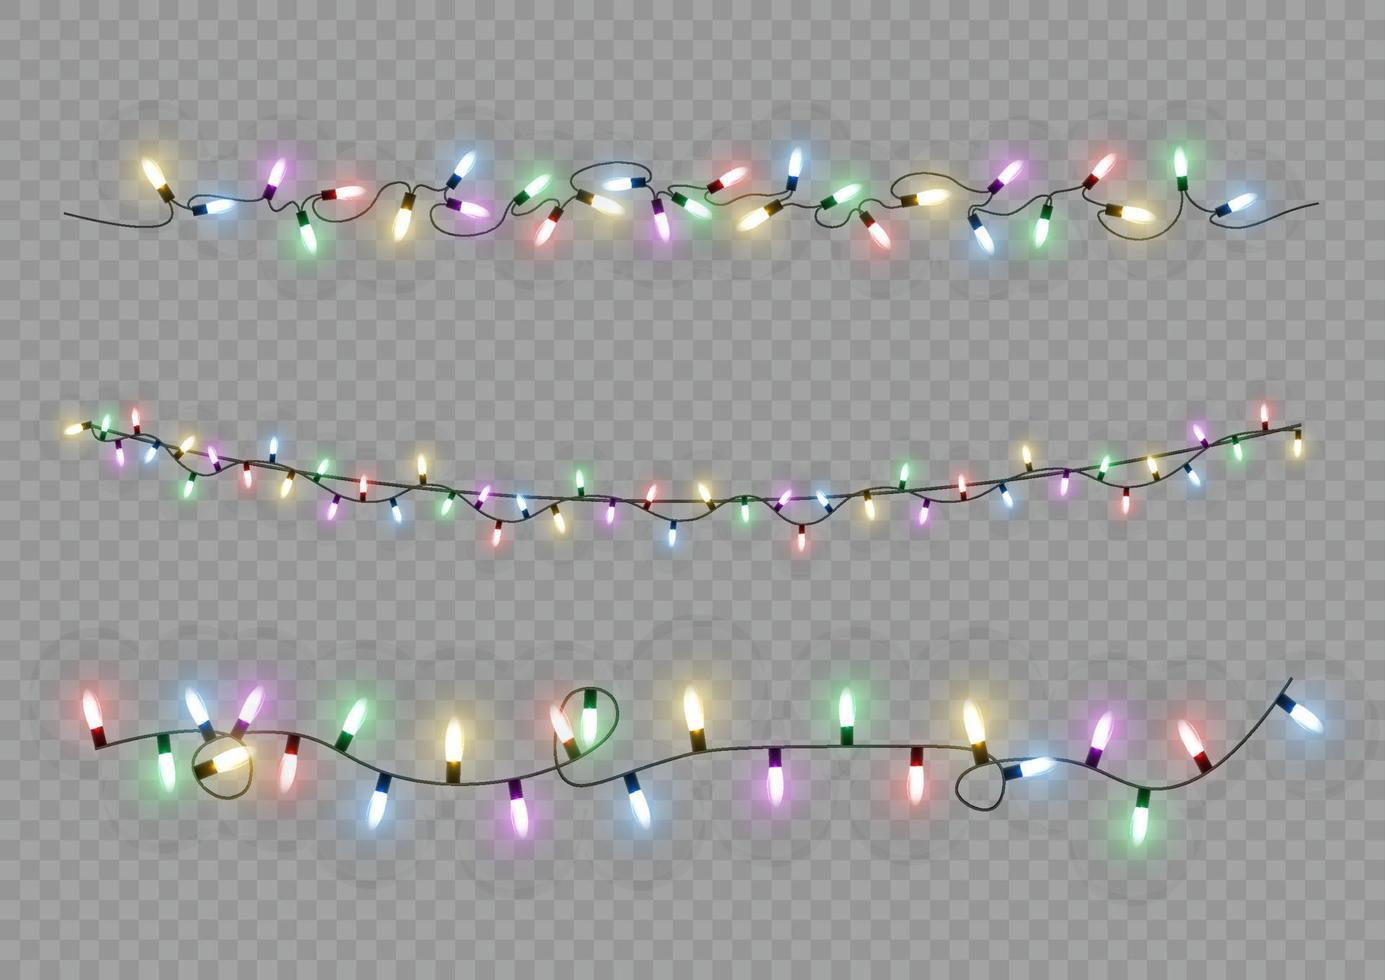 Kerstmis lichten. vector lijn met gloeiend licht lampen.set van gouden Kerstmis gloeiend slinger LED neon lamp illustratie. Kerstmis lichten geïsoleerd voor kaarten, spandoeken, posters